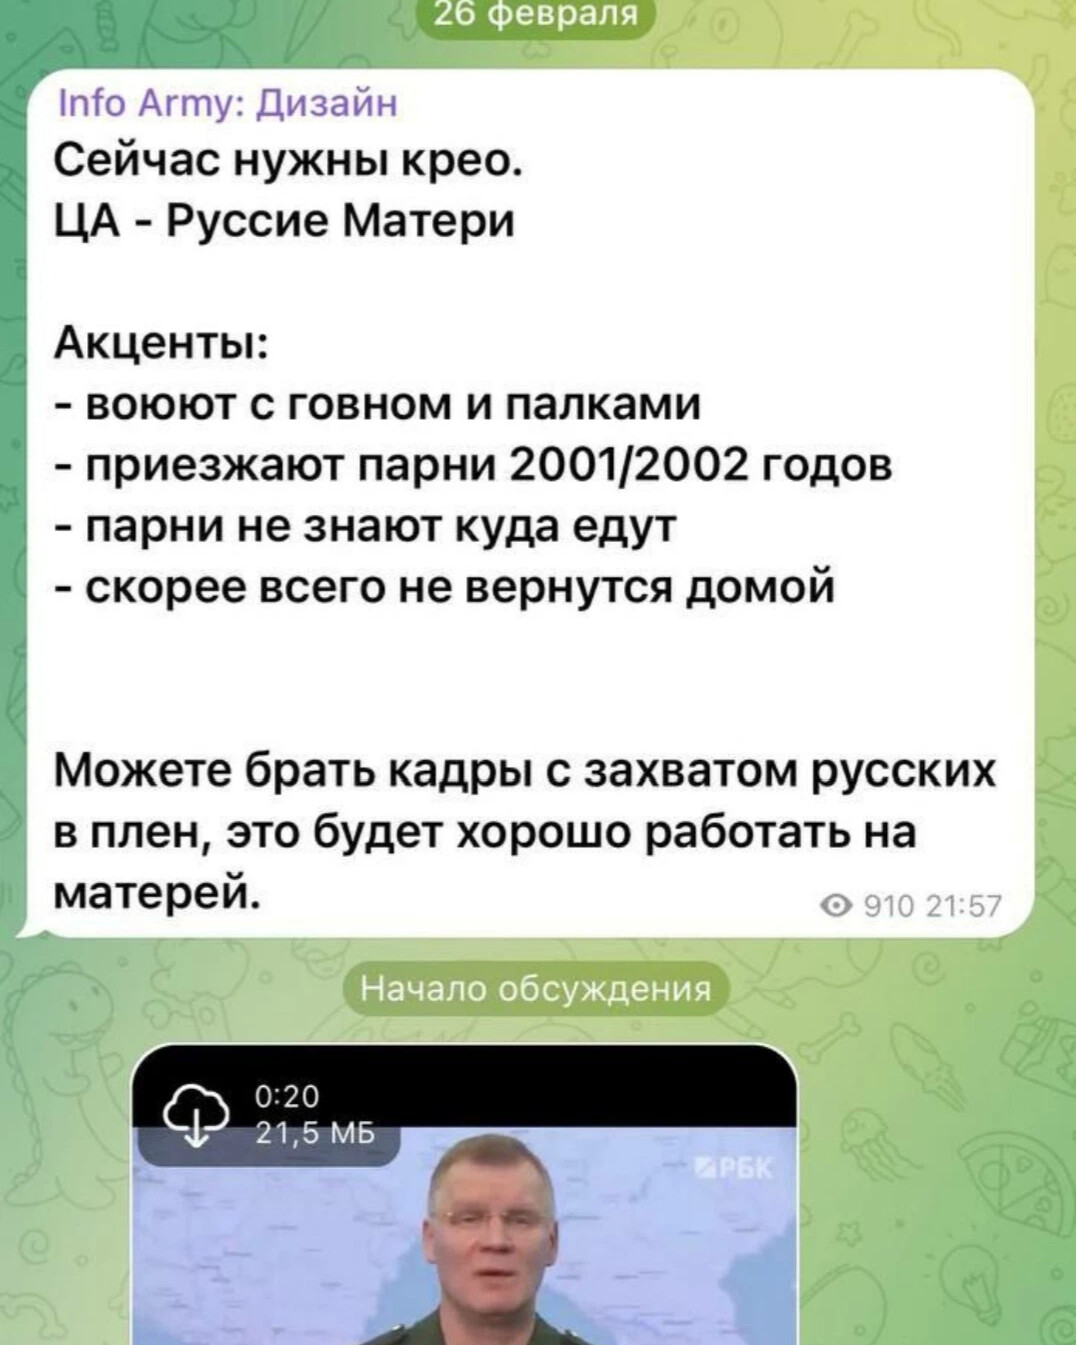 Военные каналы на украине телеграмм фото 91